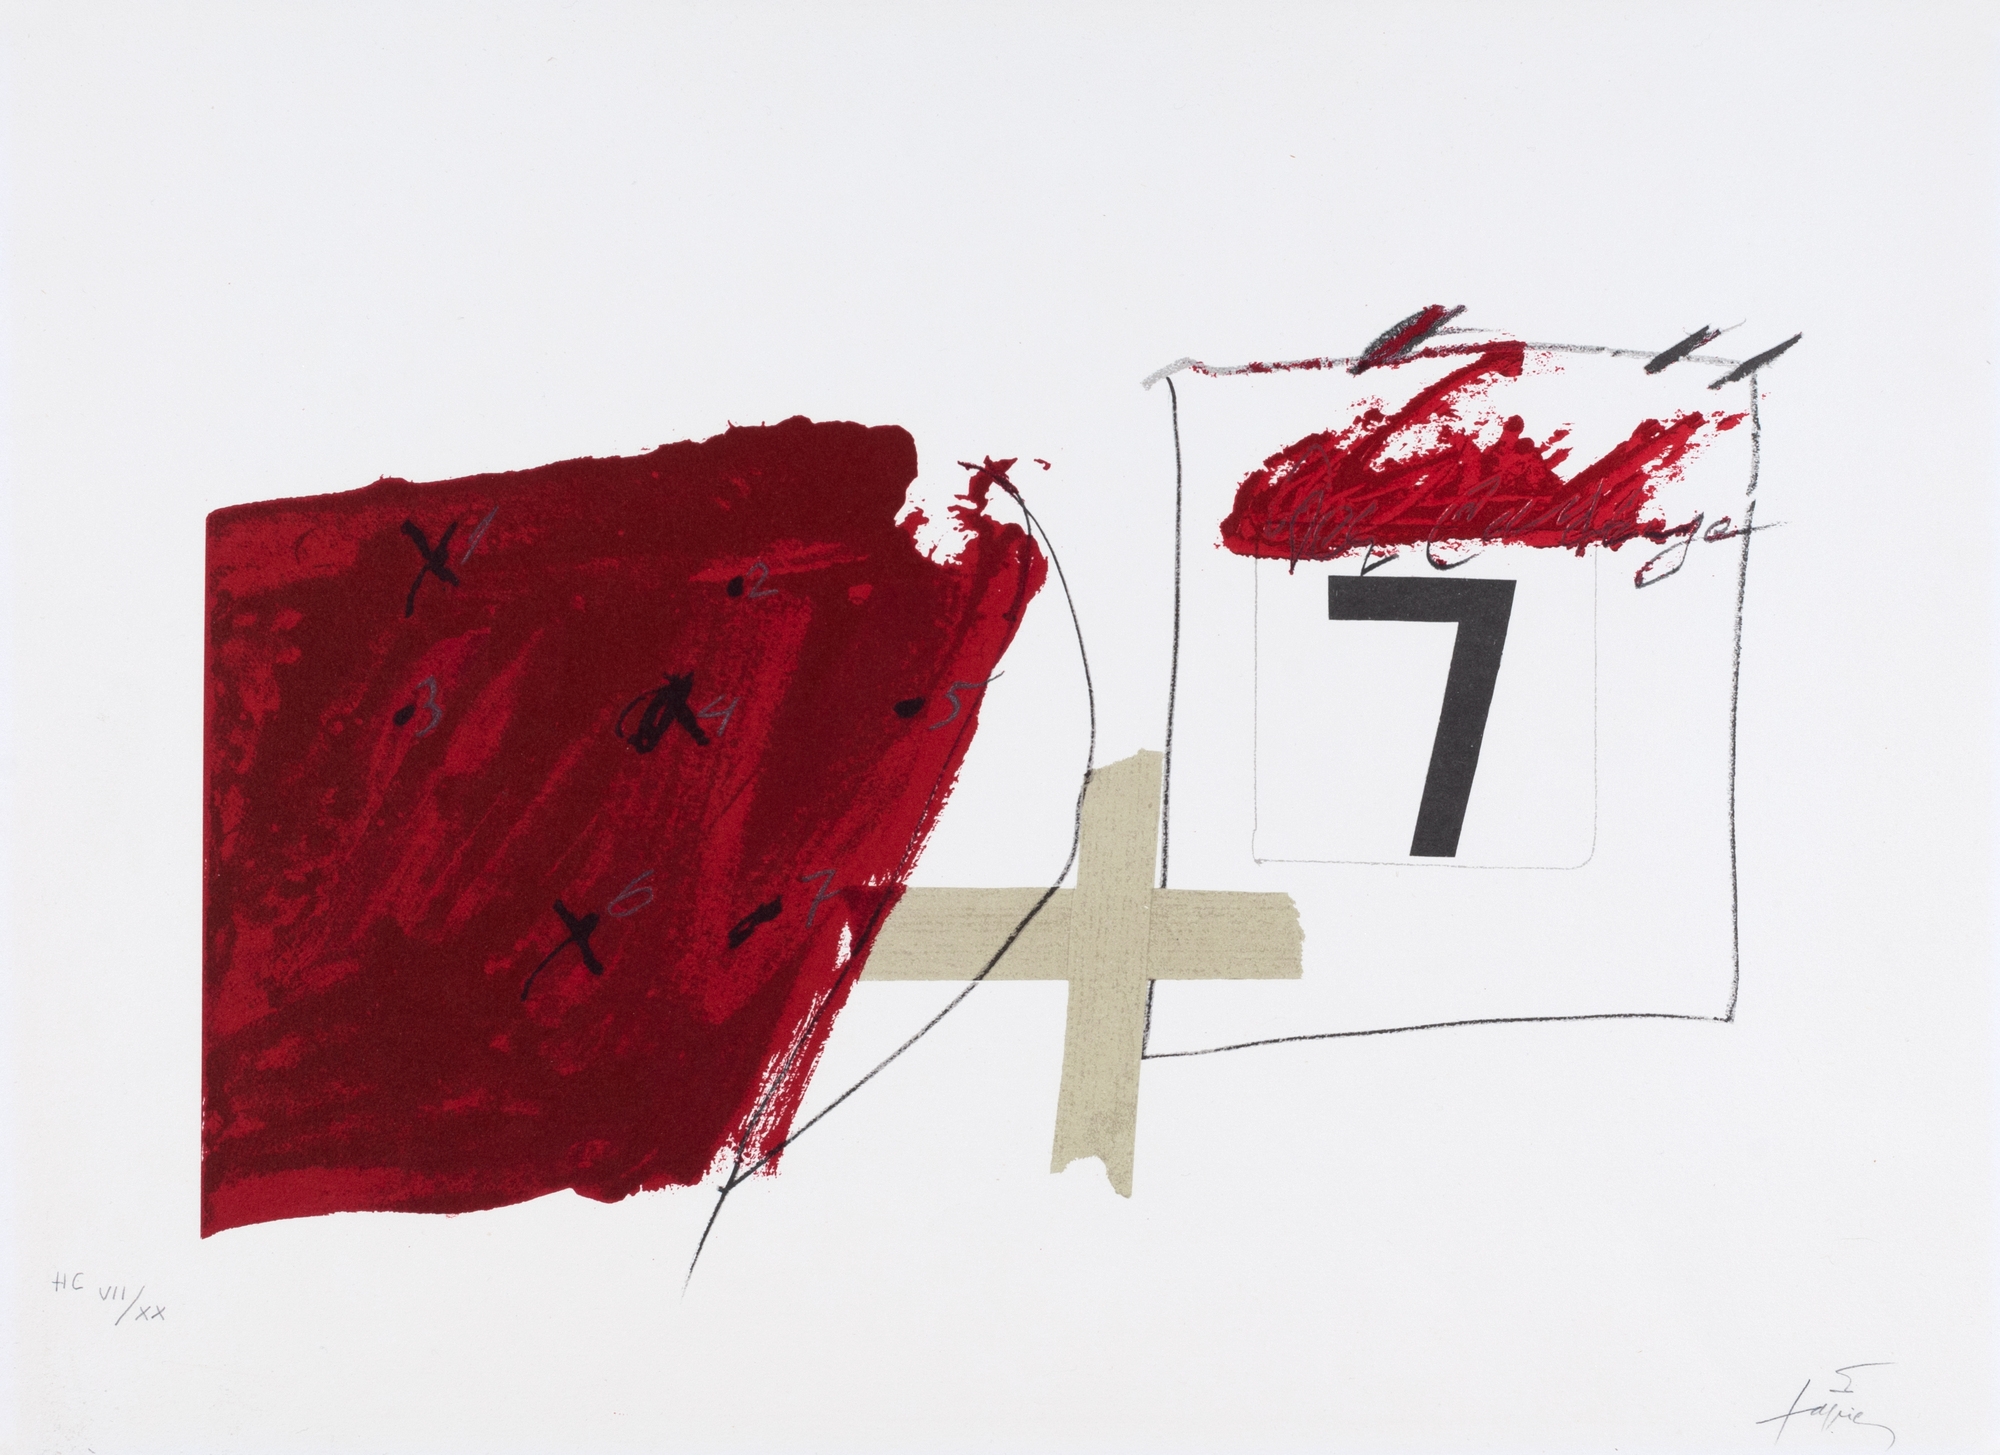 Rouge et sept by Antoni Tàpies, 1975